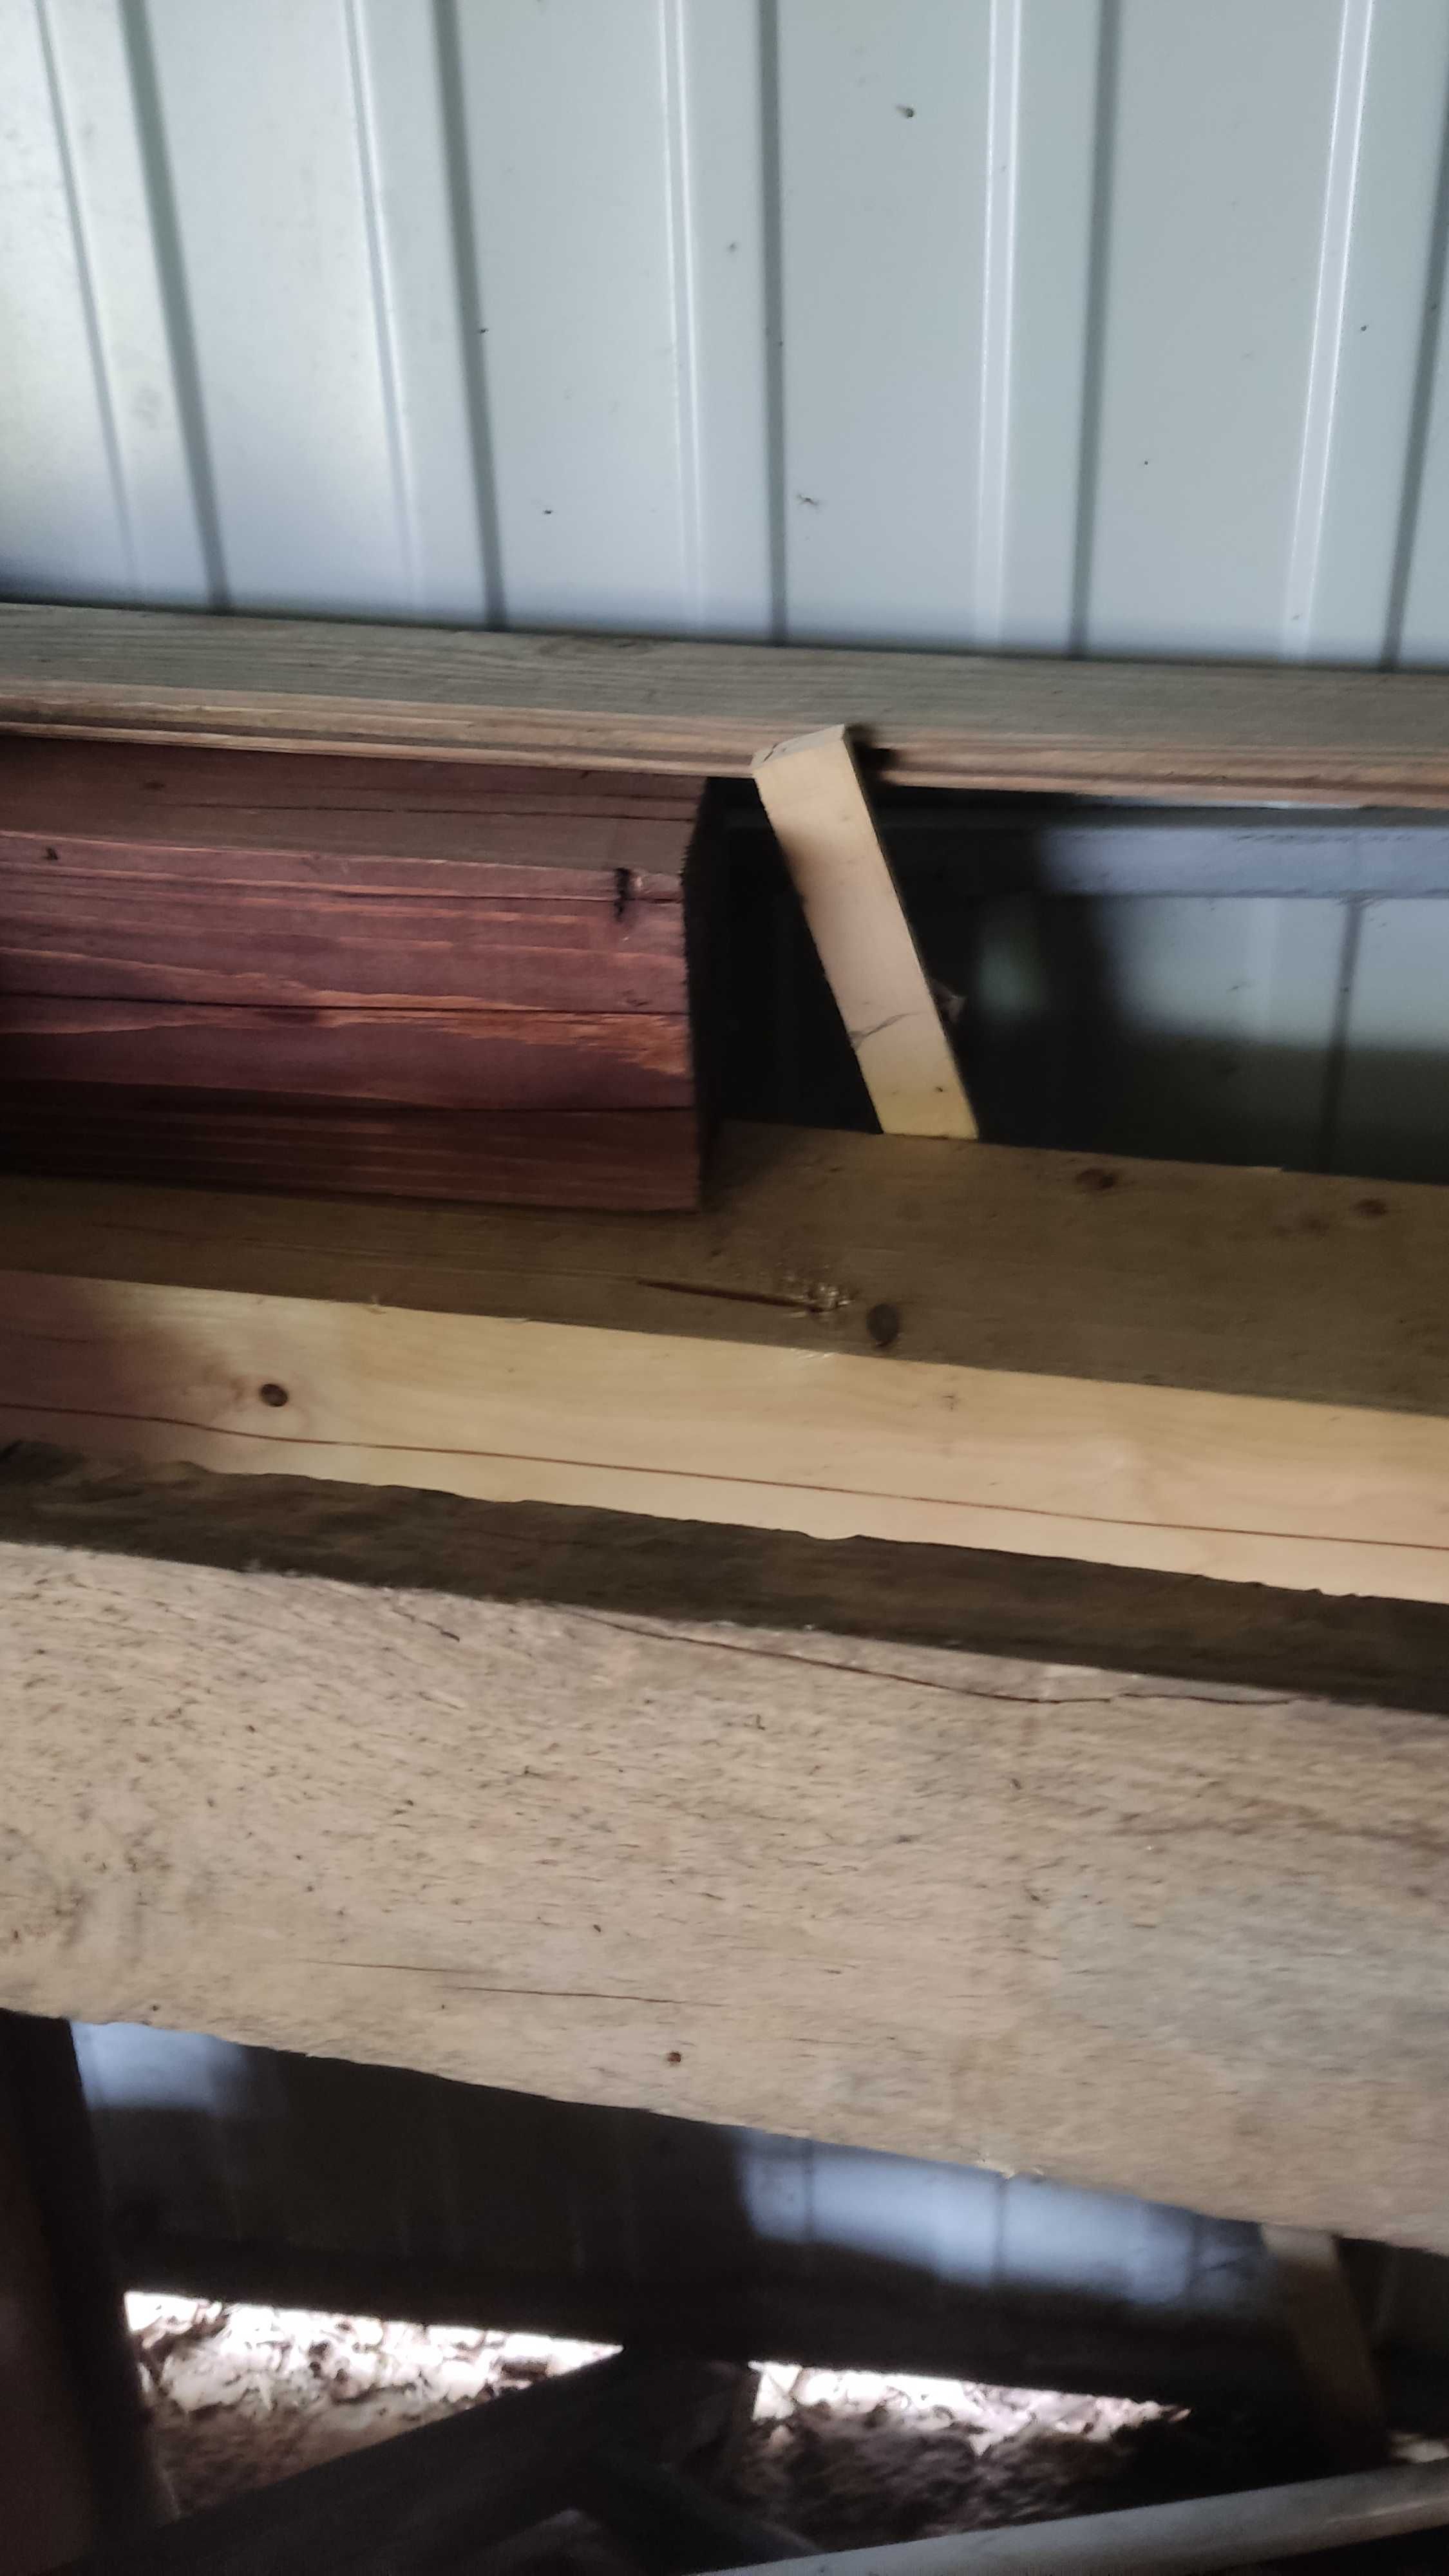 kantówka 13 x 13 słupy drewno konstrukcyjne